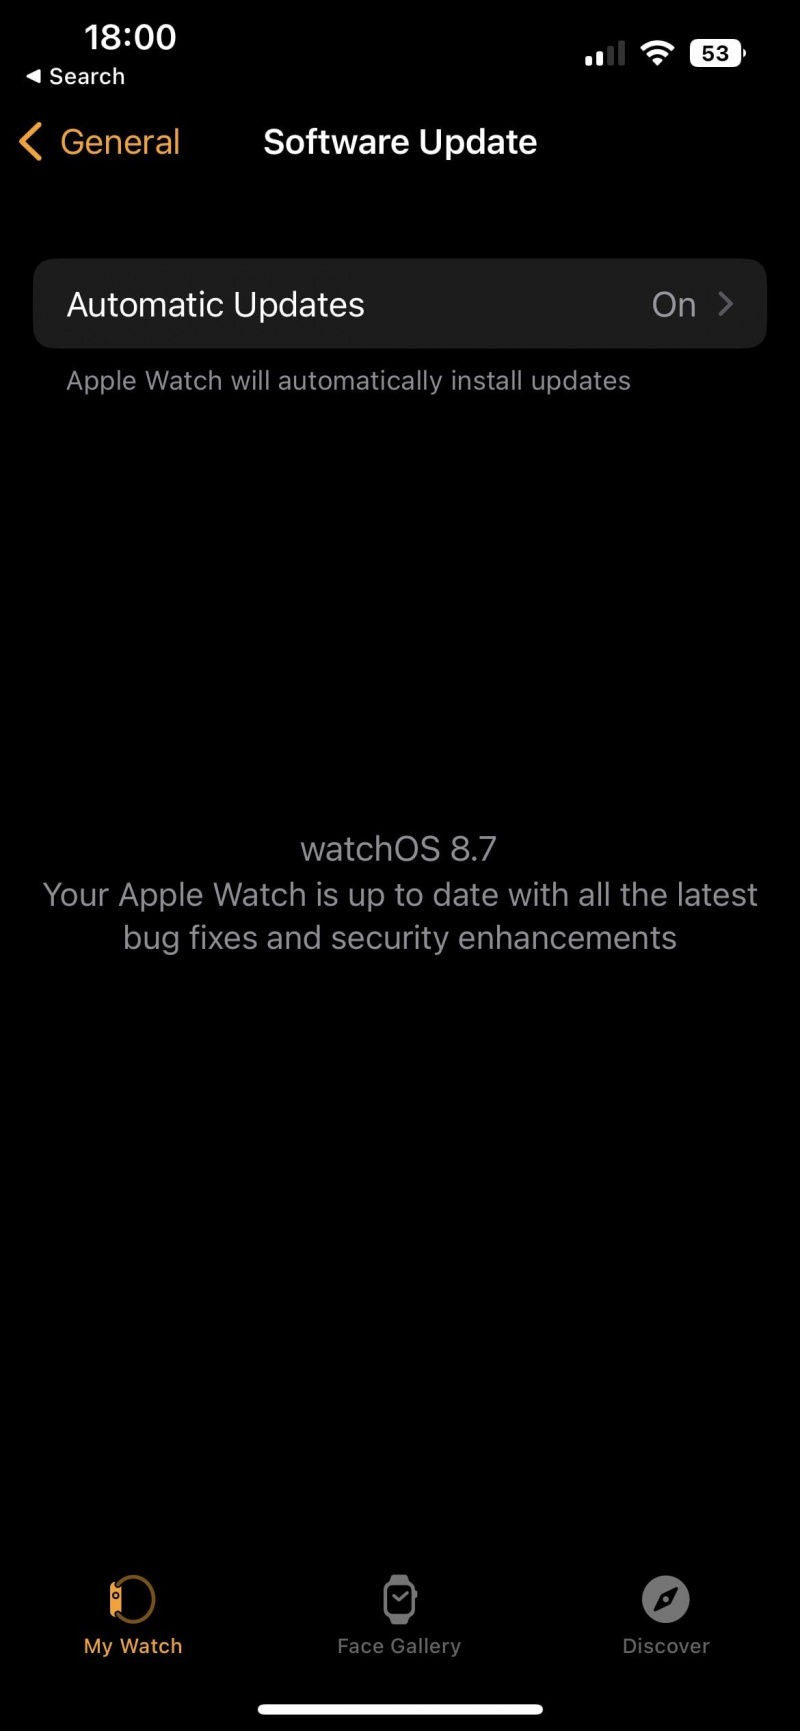   شاهد لقطة شاشة للتطبيق توضح عدم وجود تحديثات متوفرة لـ Apple Watch في الوقت الحالي.